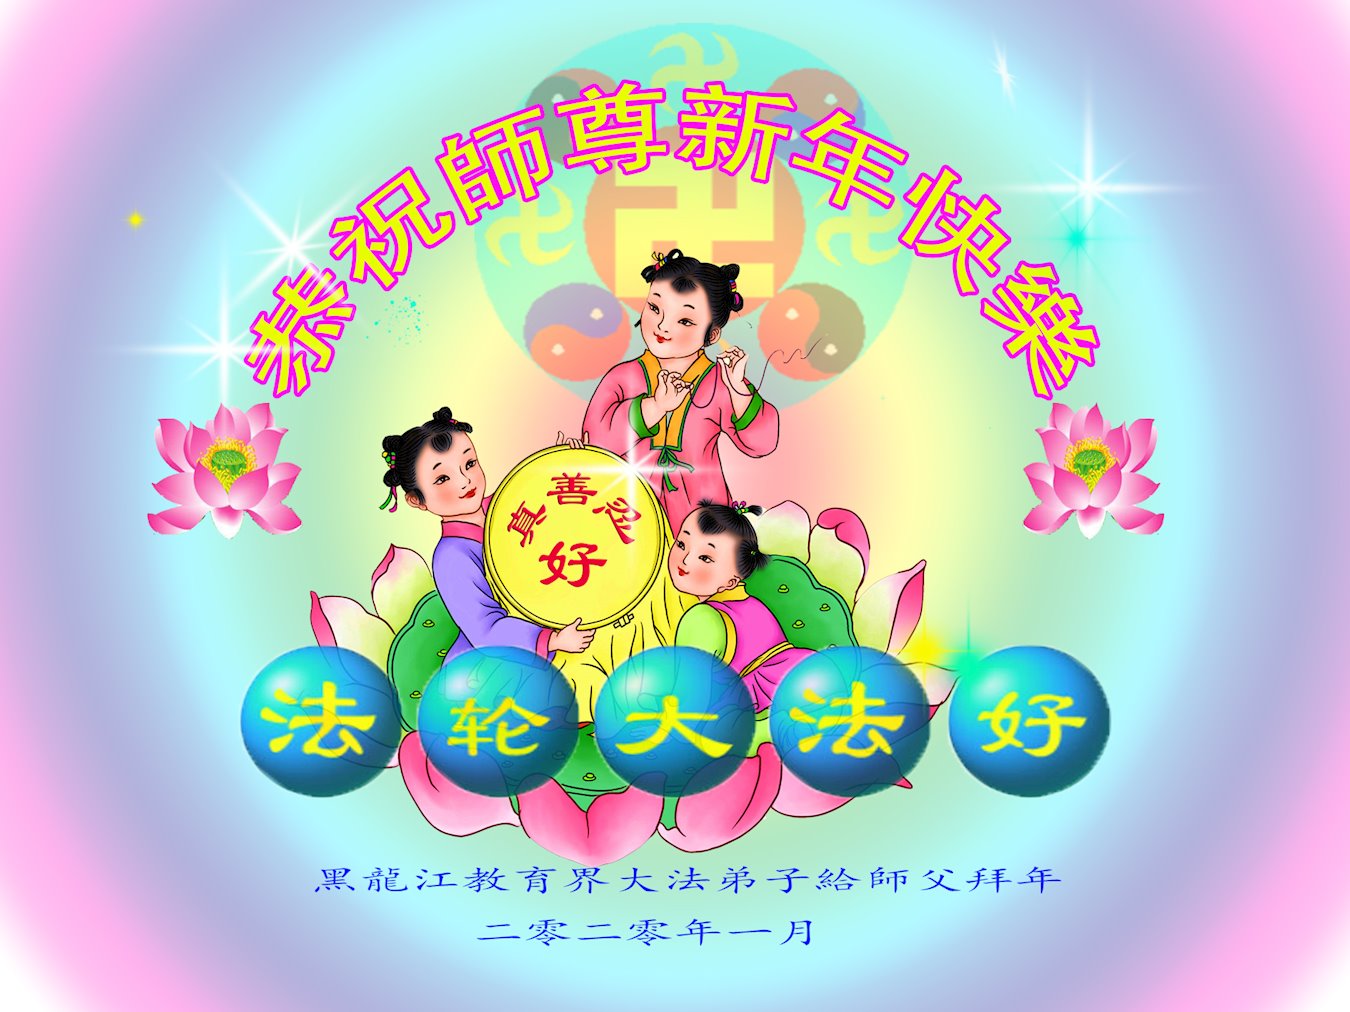 Image for article Des pratiquants de Falun Dafa de Chongqing souhaitent respectueusement à Maître Li Hongzhi un bon Nouvel An chinois (24 vœux)